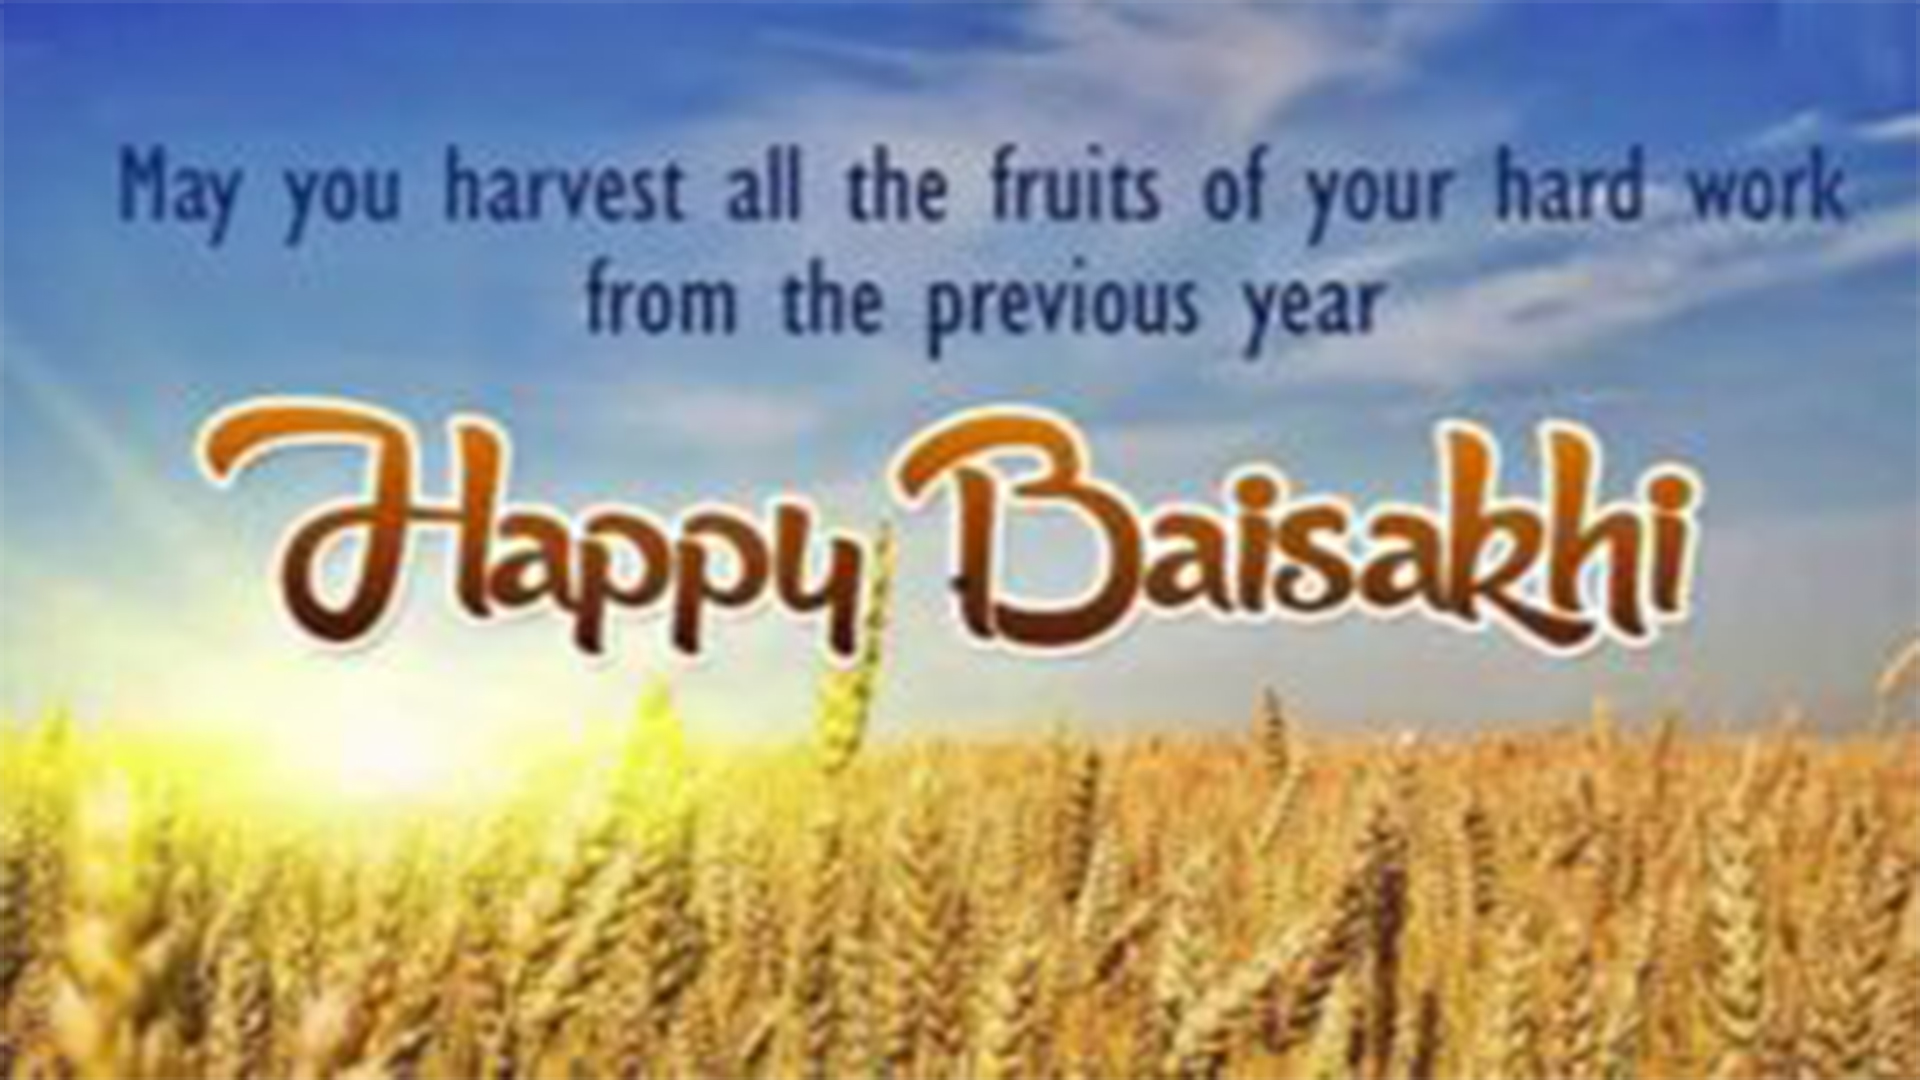 Happy Baisakhi Wishes & Greetings Images | Vaisakhi Festival